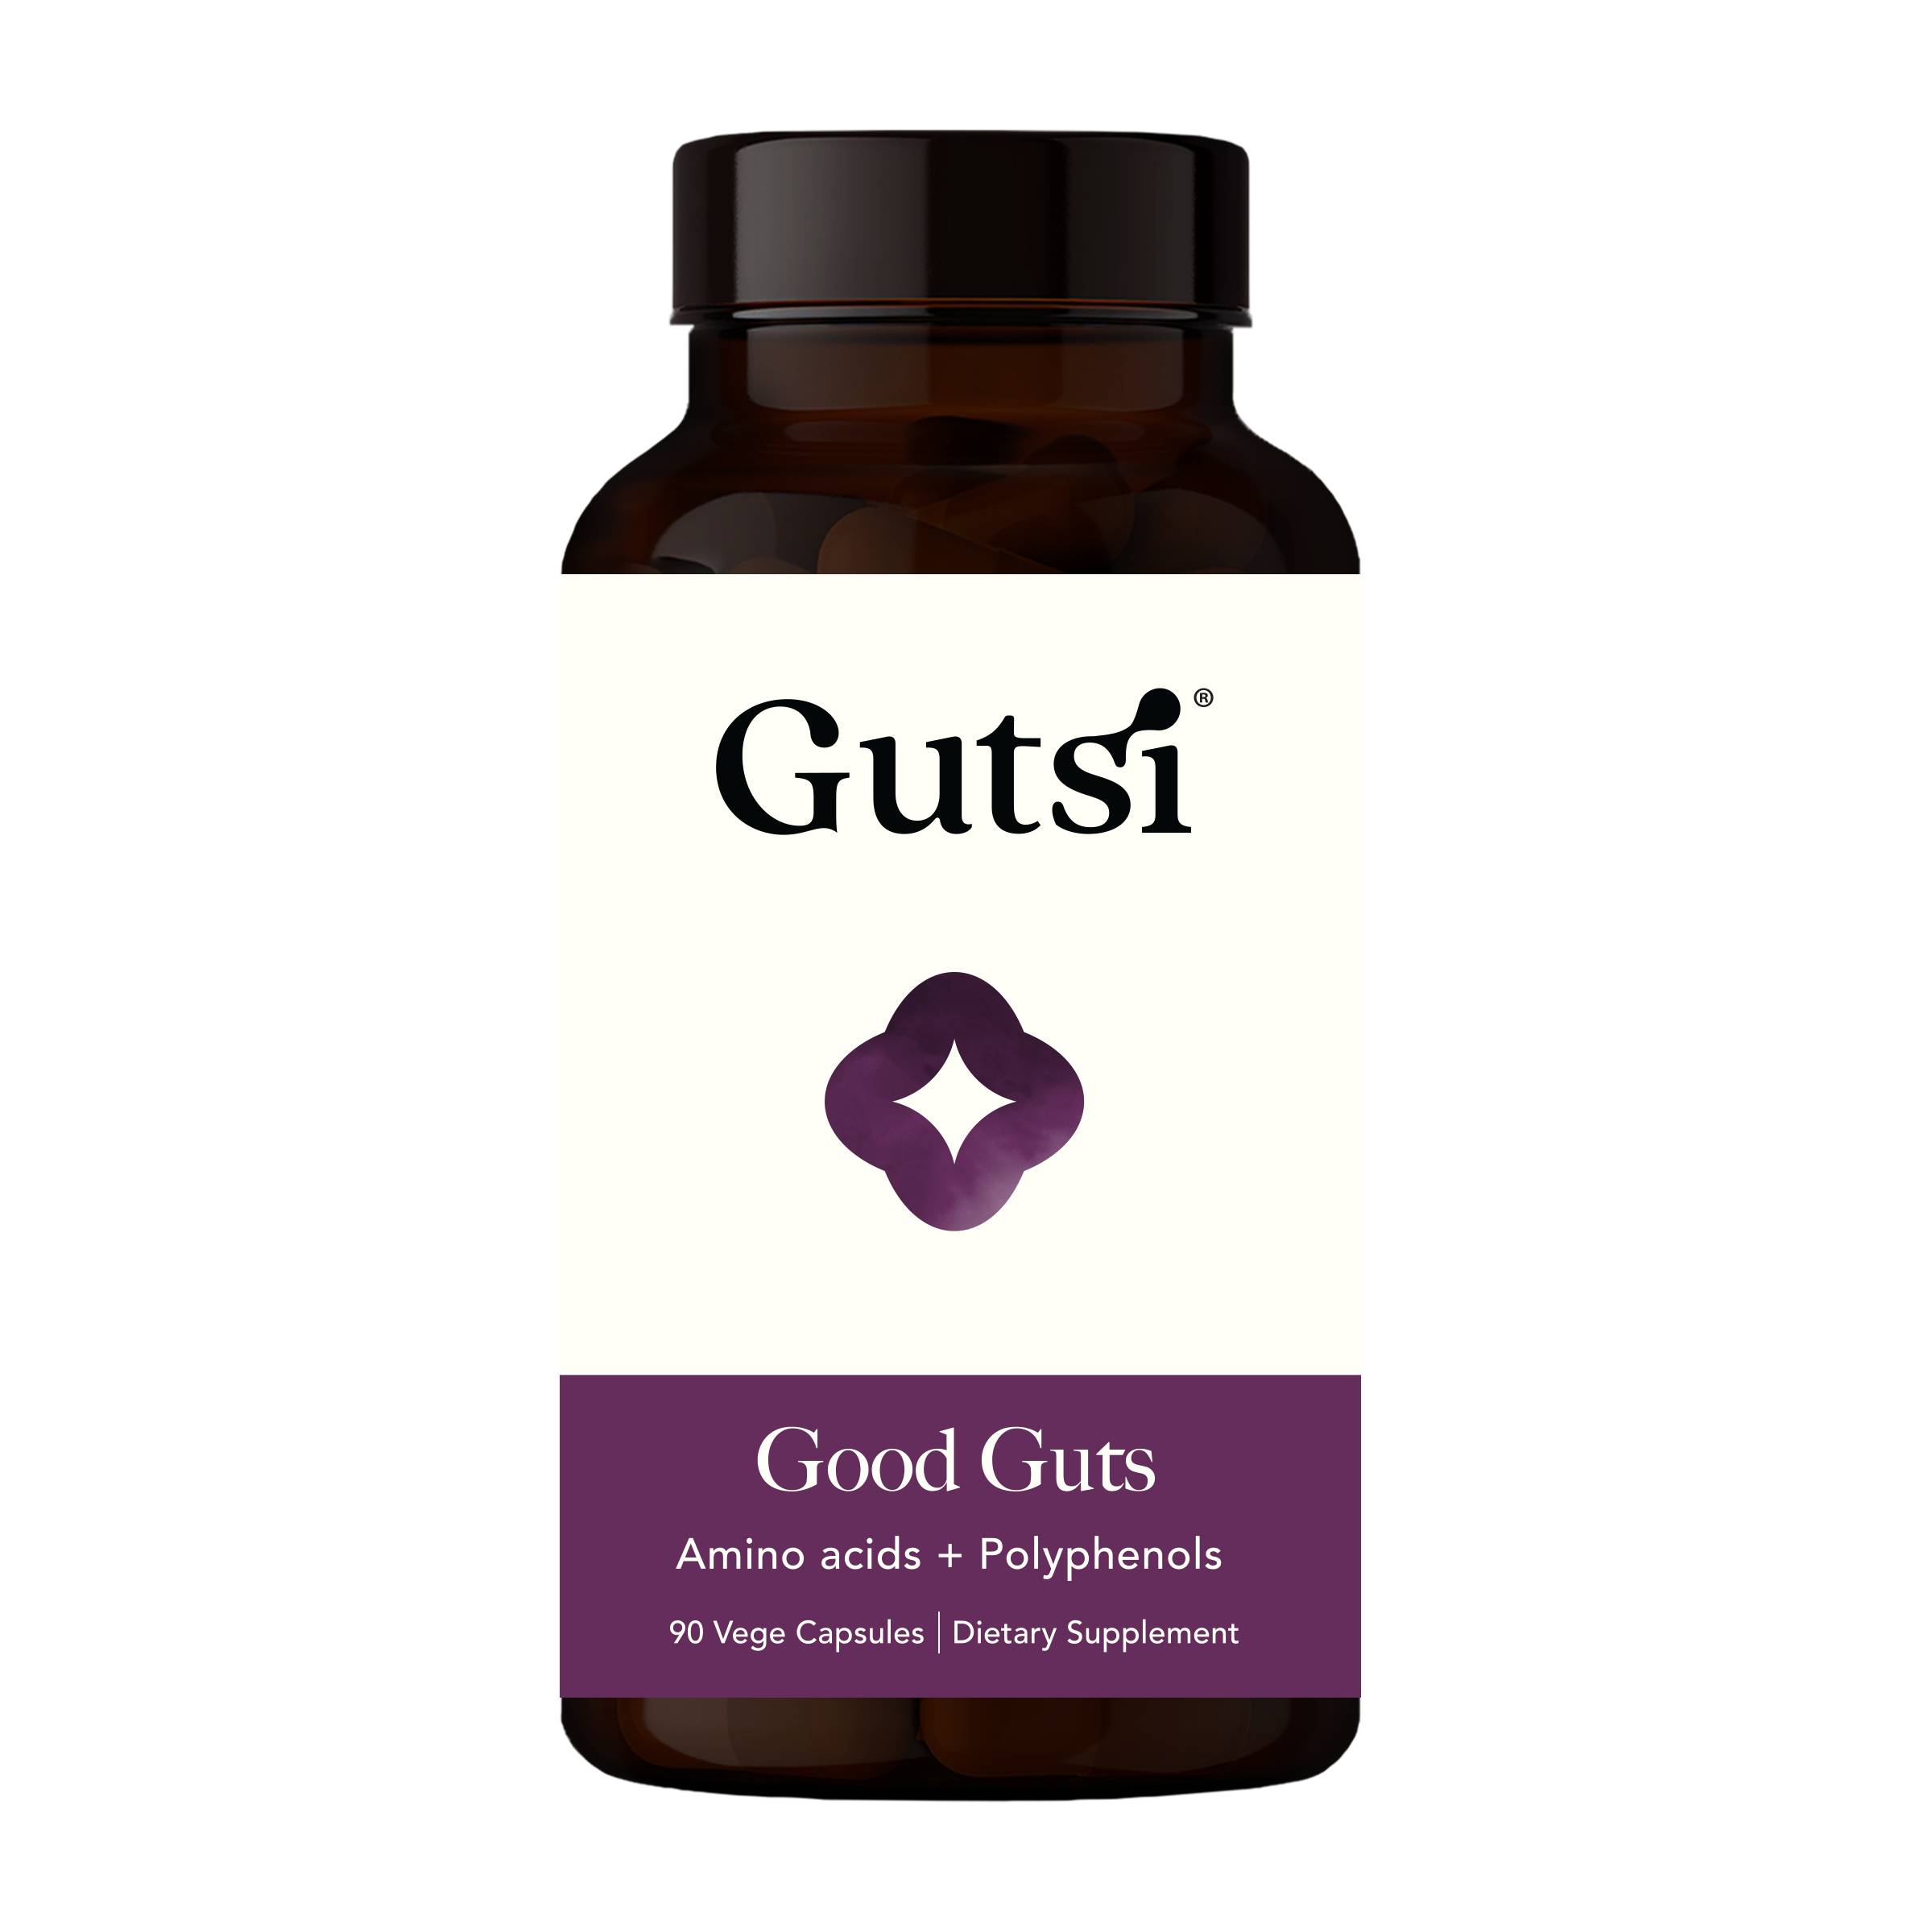 Gutsi Good Guts